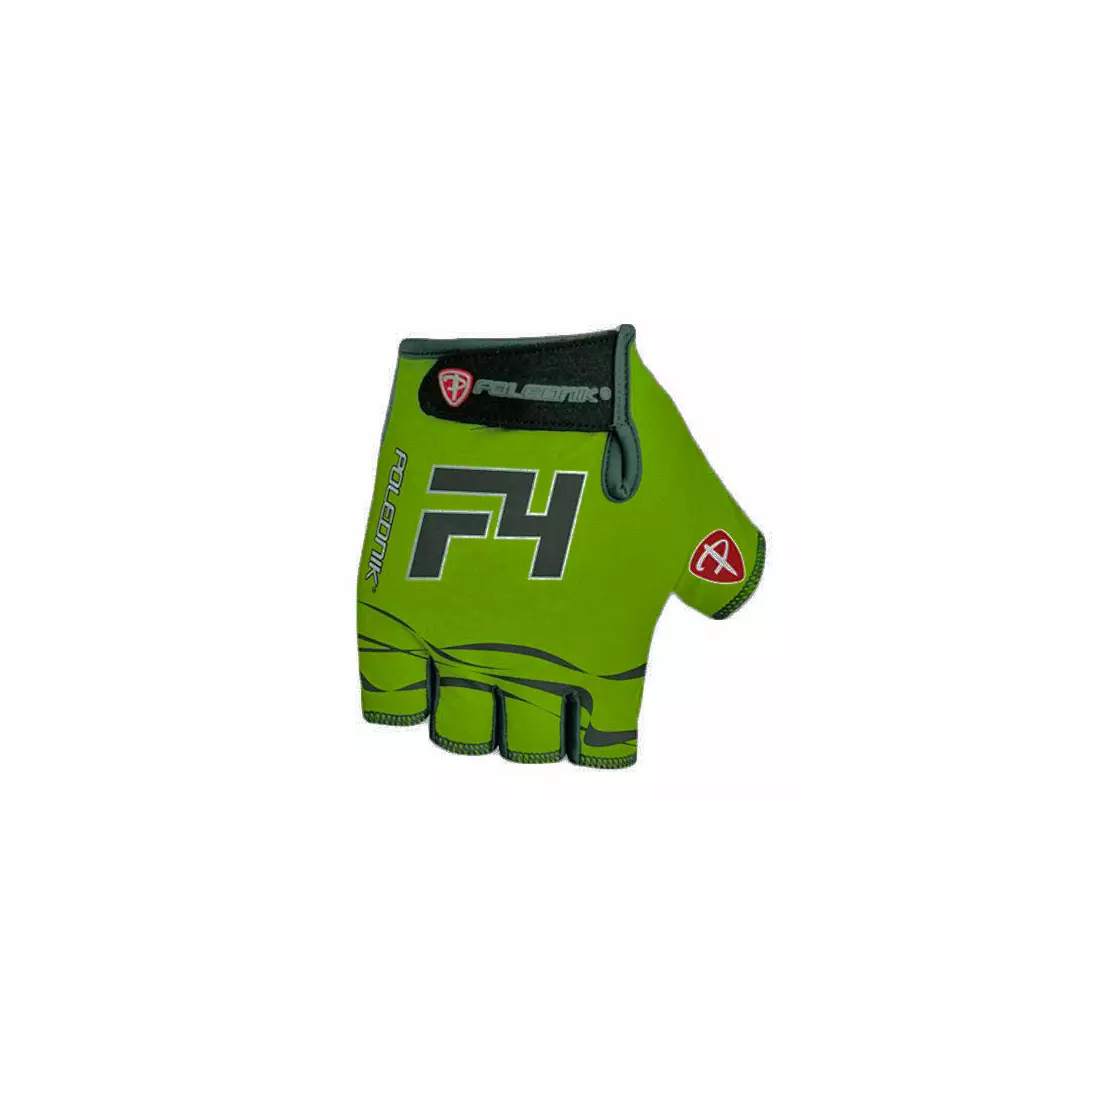 Mănuși POLEDNIK F4 NEW15, culoare: fluor